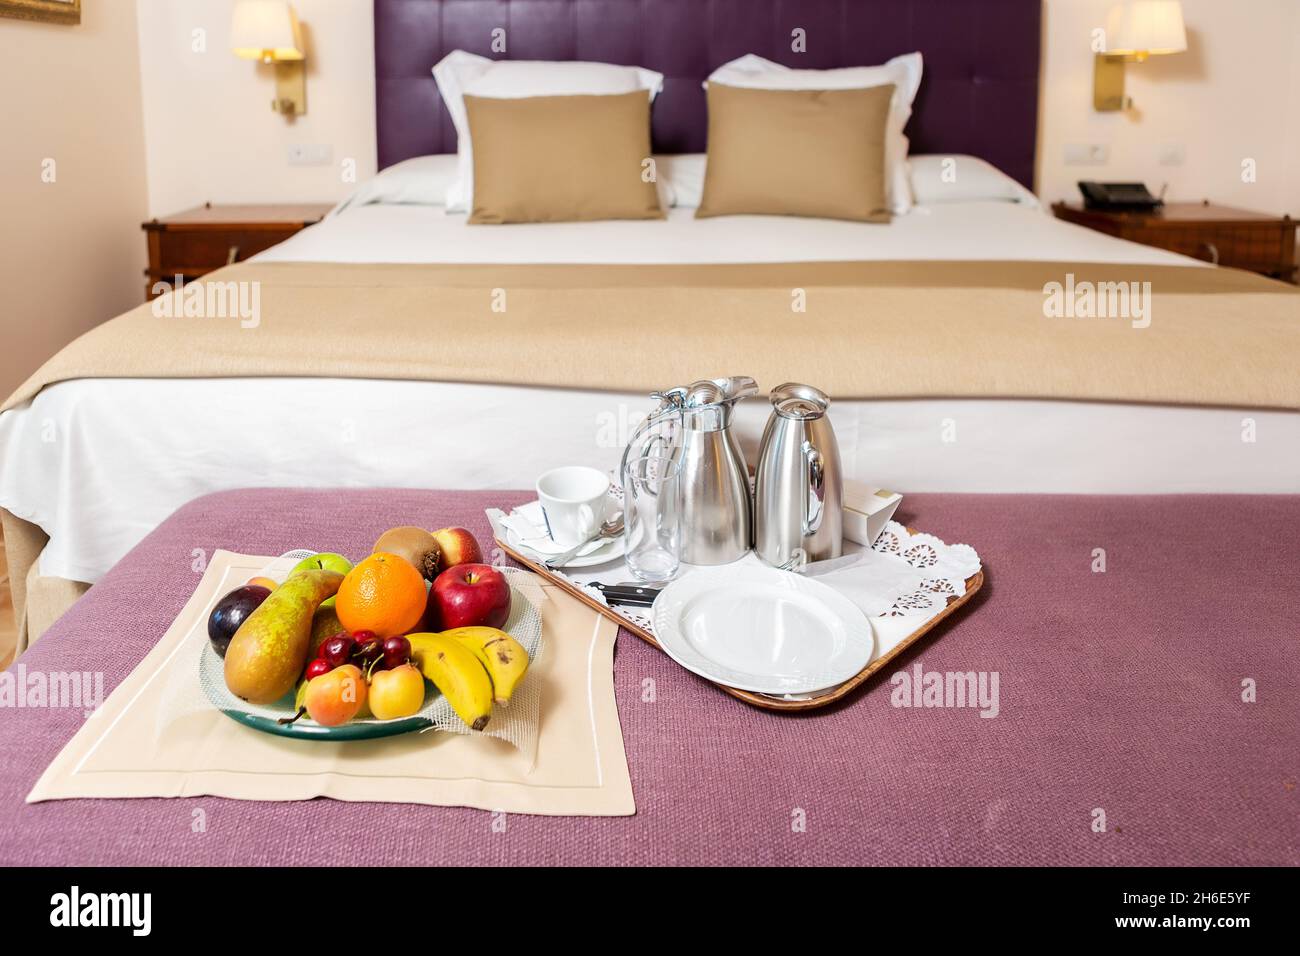 Teller mit verschiedenen Früchten und Kaffee-Set auf Tablett platziert Auf dem Tisch mit violetter Abdeckung auf dem Hintergrund des Bettes in Weiße und braune Farben Stockfoto